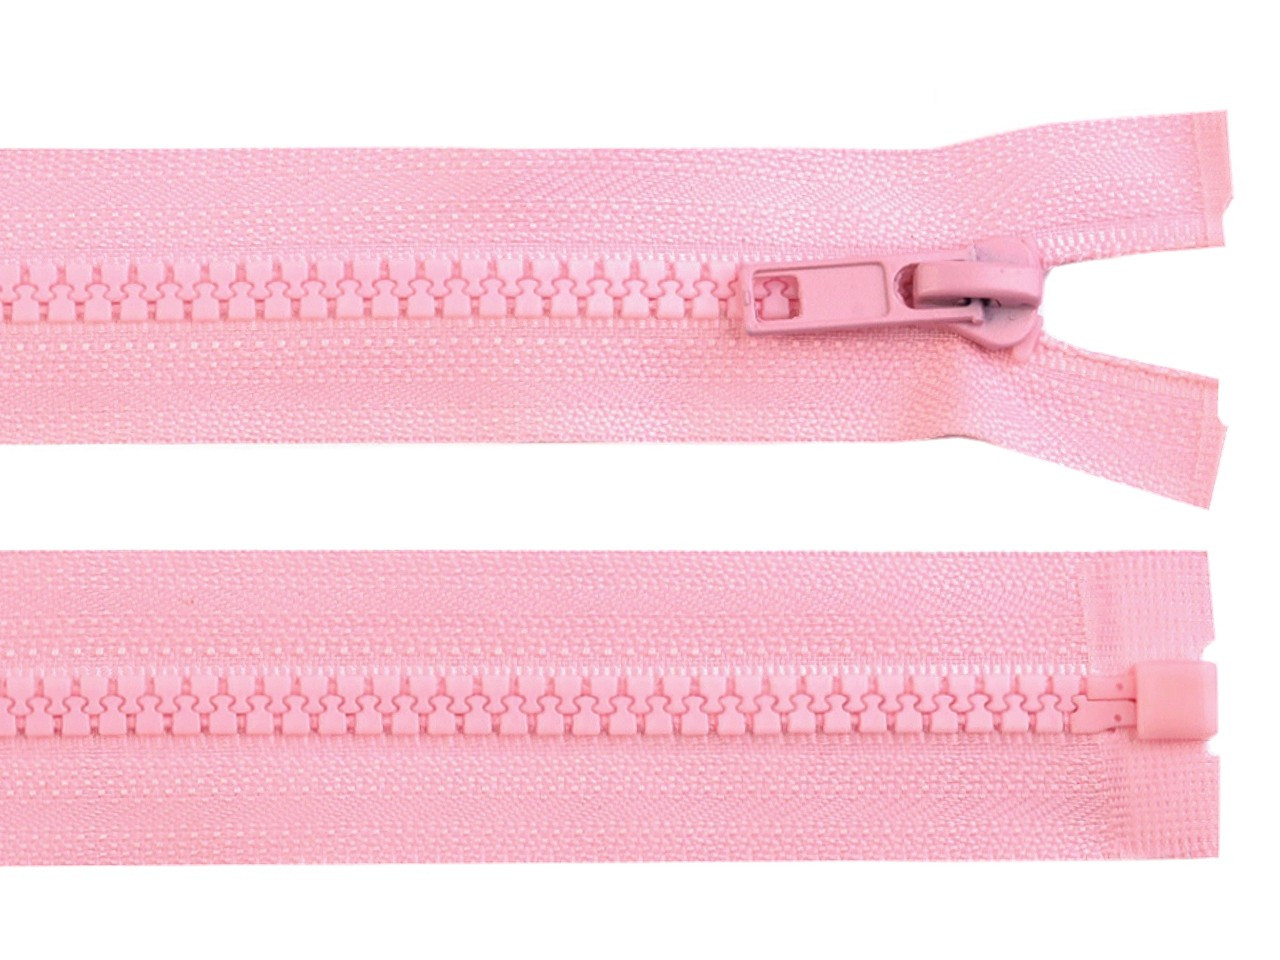 Kostěný zip No 5 délka 70 cm bundový, barva 134 růžová dětská světlá